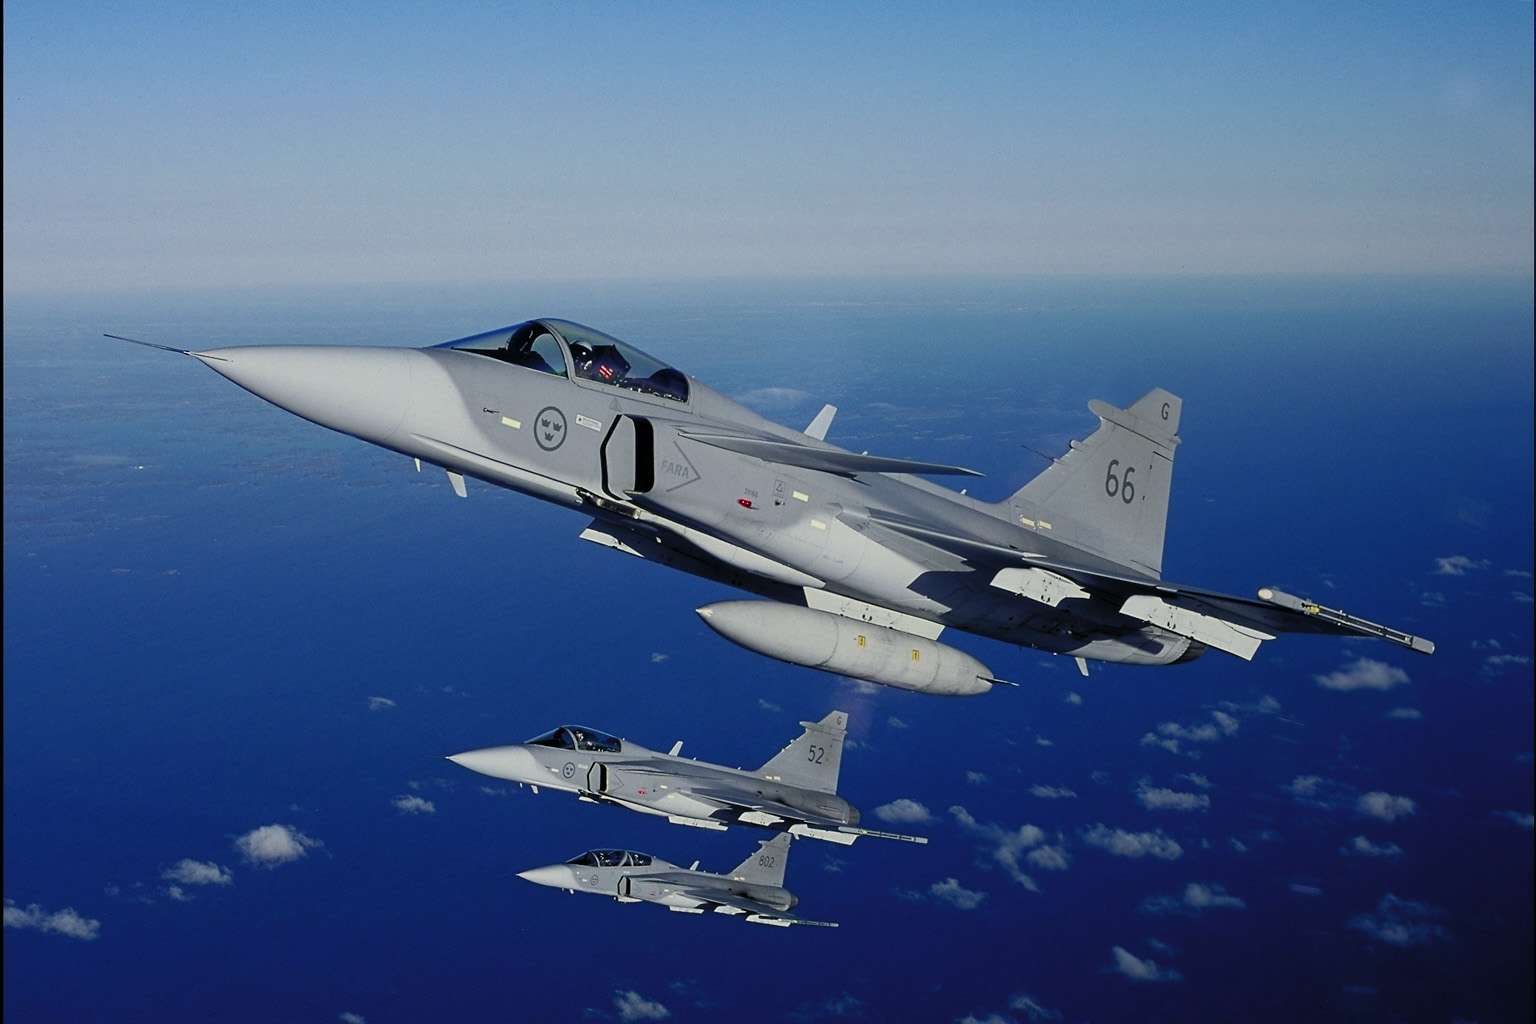 Η Κολομβία εξετάζει αγορά αεροσκαφών  μεταξύ Gripen,Eurofighter και F-16